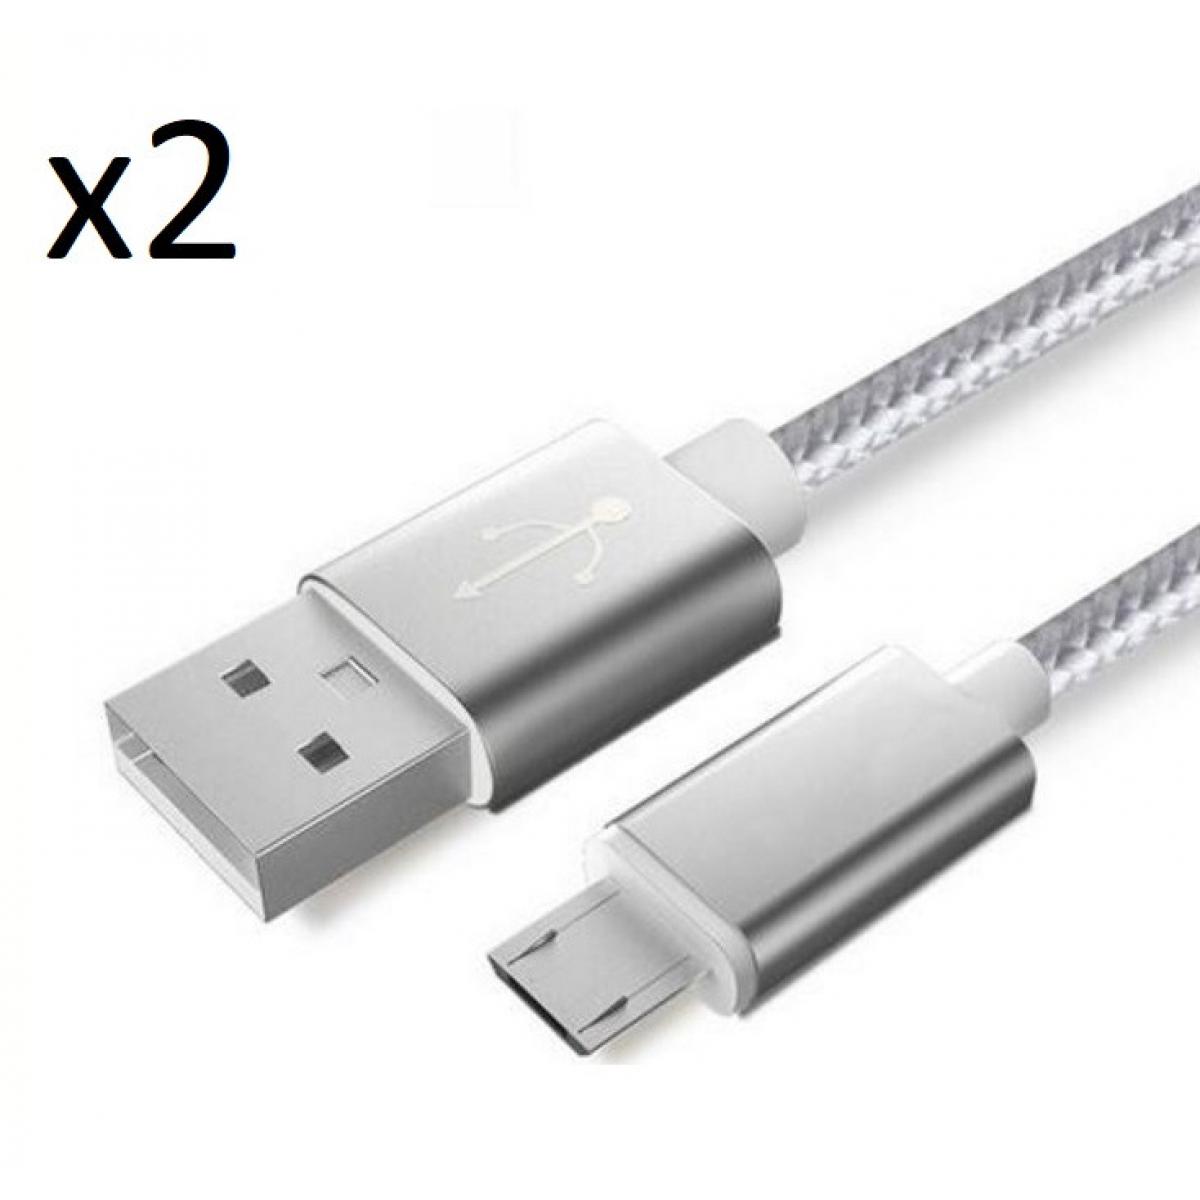 Shot - Pack de 2 Cables Metal Nylon Micro USB pour WIKO View 4 Smartphone Android Chargeur (ARGENT) - Chargeur secteur téléphone